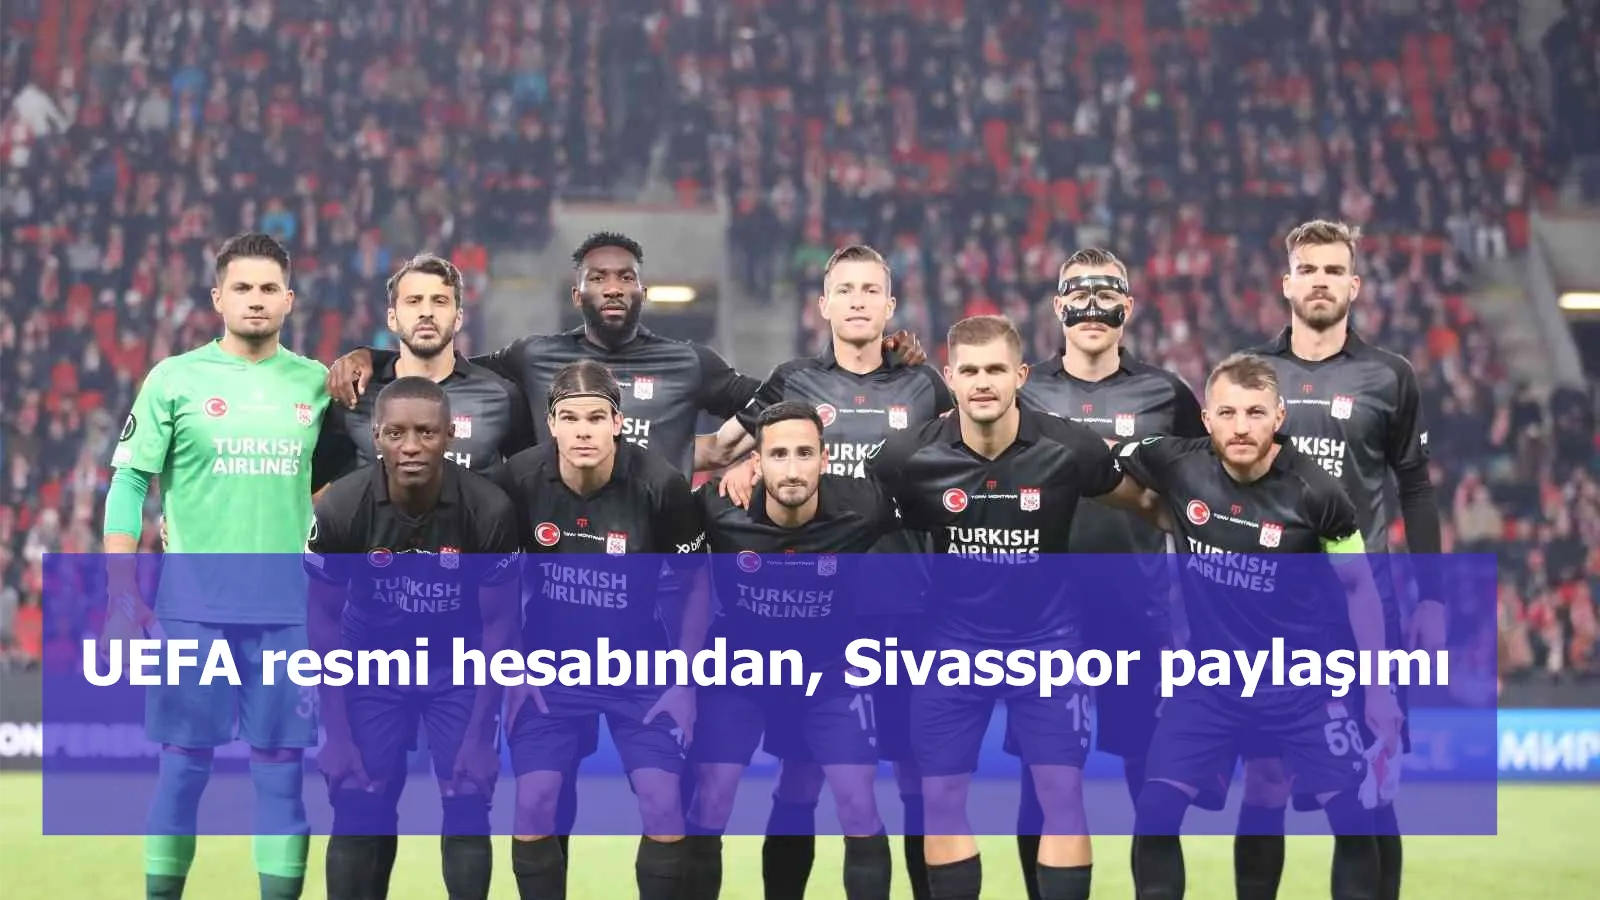 UEFA resmi hesabından, Sivasspor paylaşımı